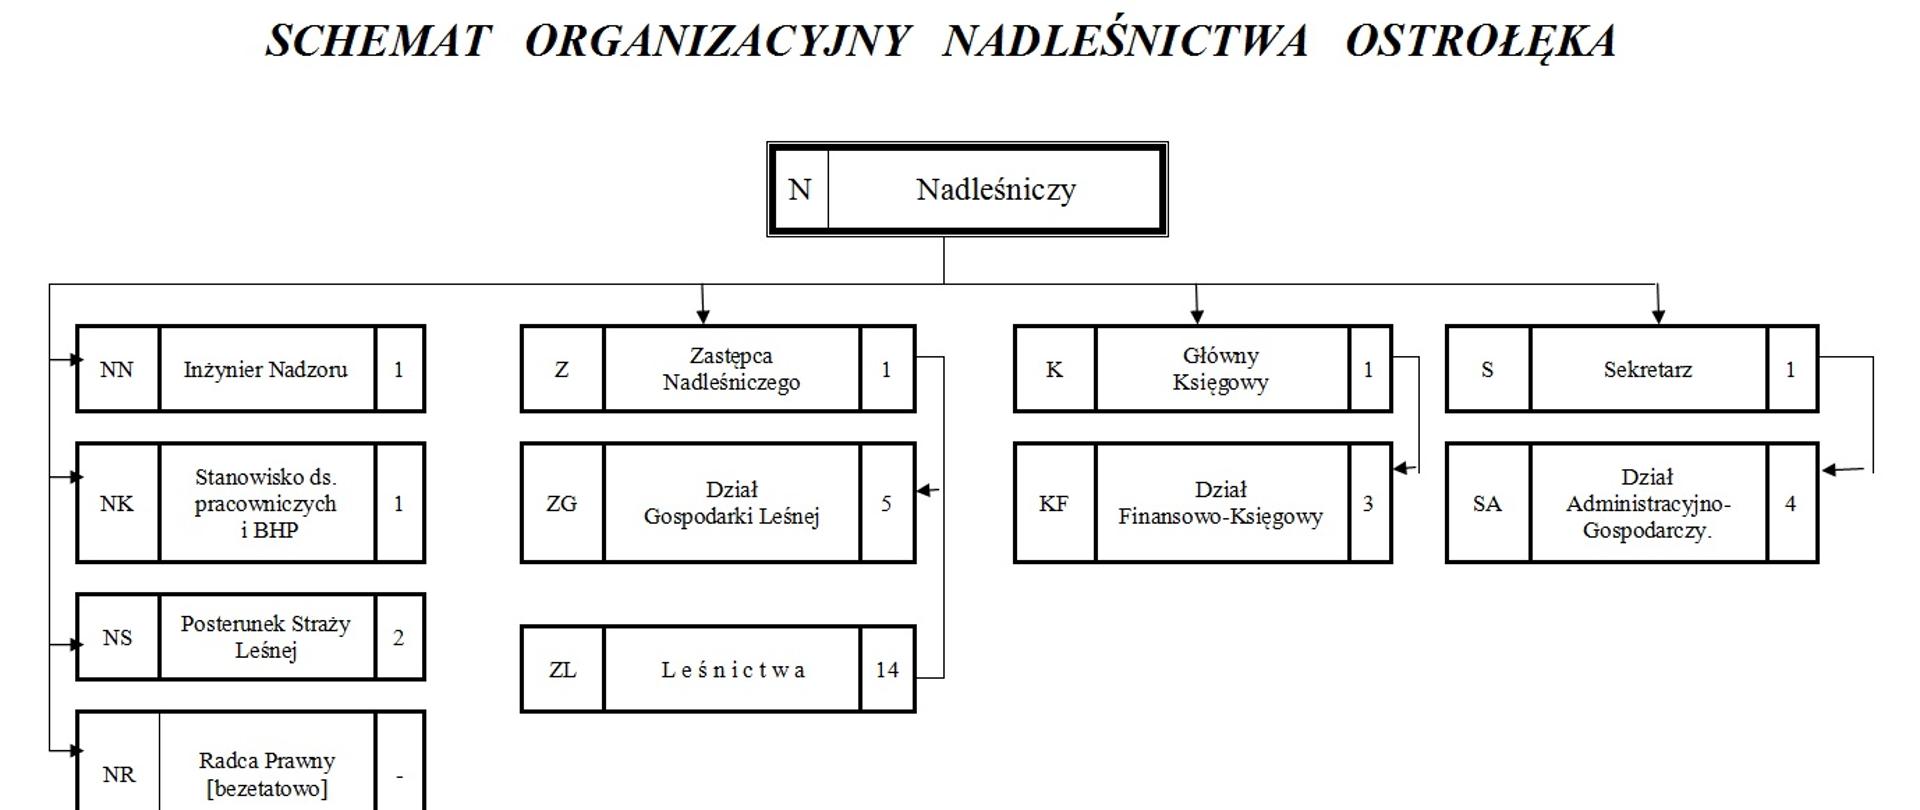 Rysunek przedstawiający schemat organizacyjny Nadleśnictwa Ostrołęka z uwzględnieniem podziału na komórki organizacyjne, ich symbole oraz liczbę etatów.